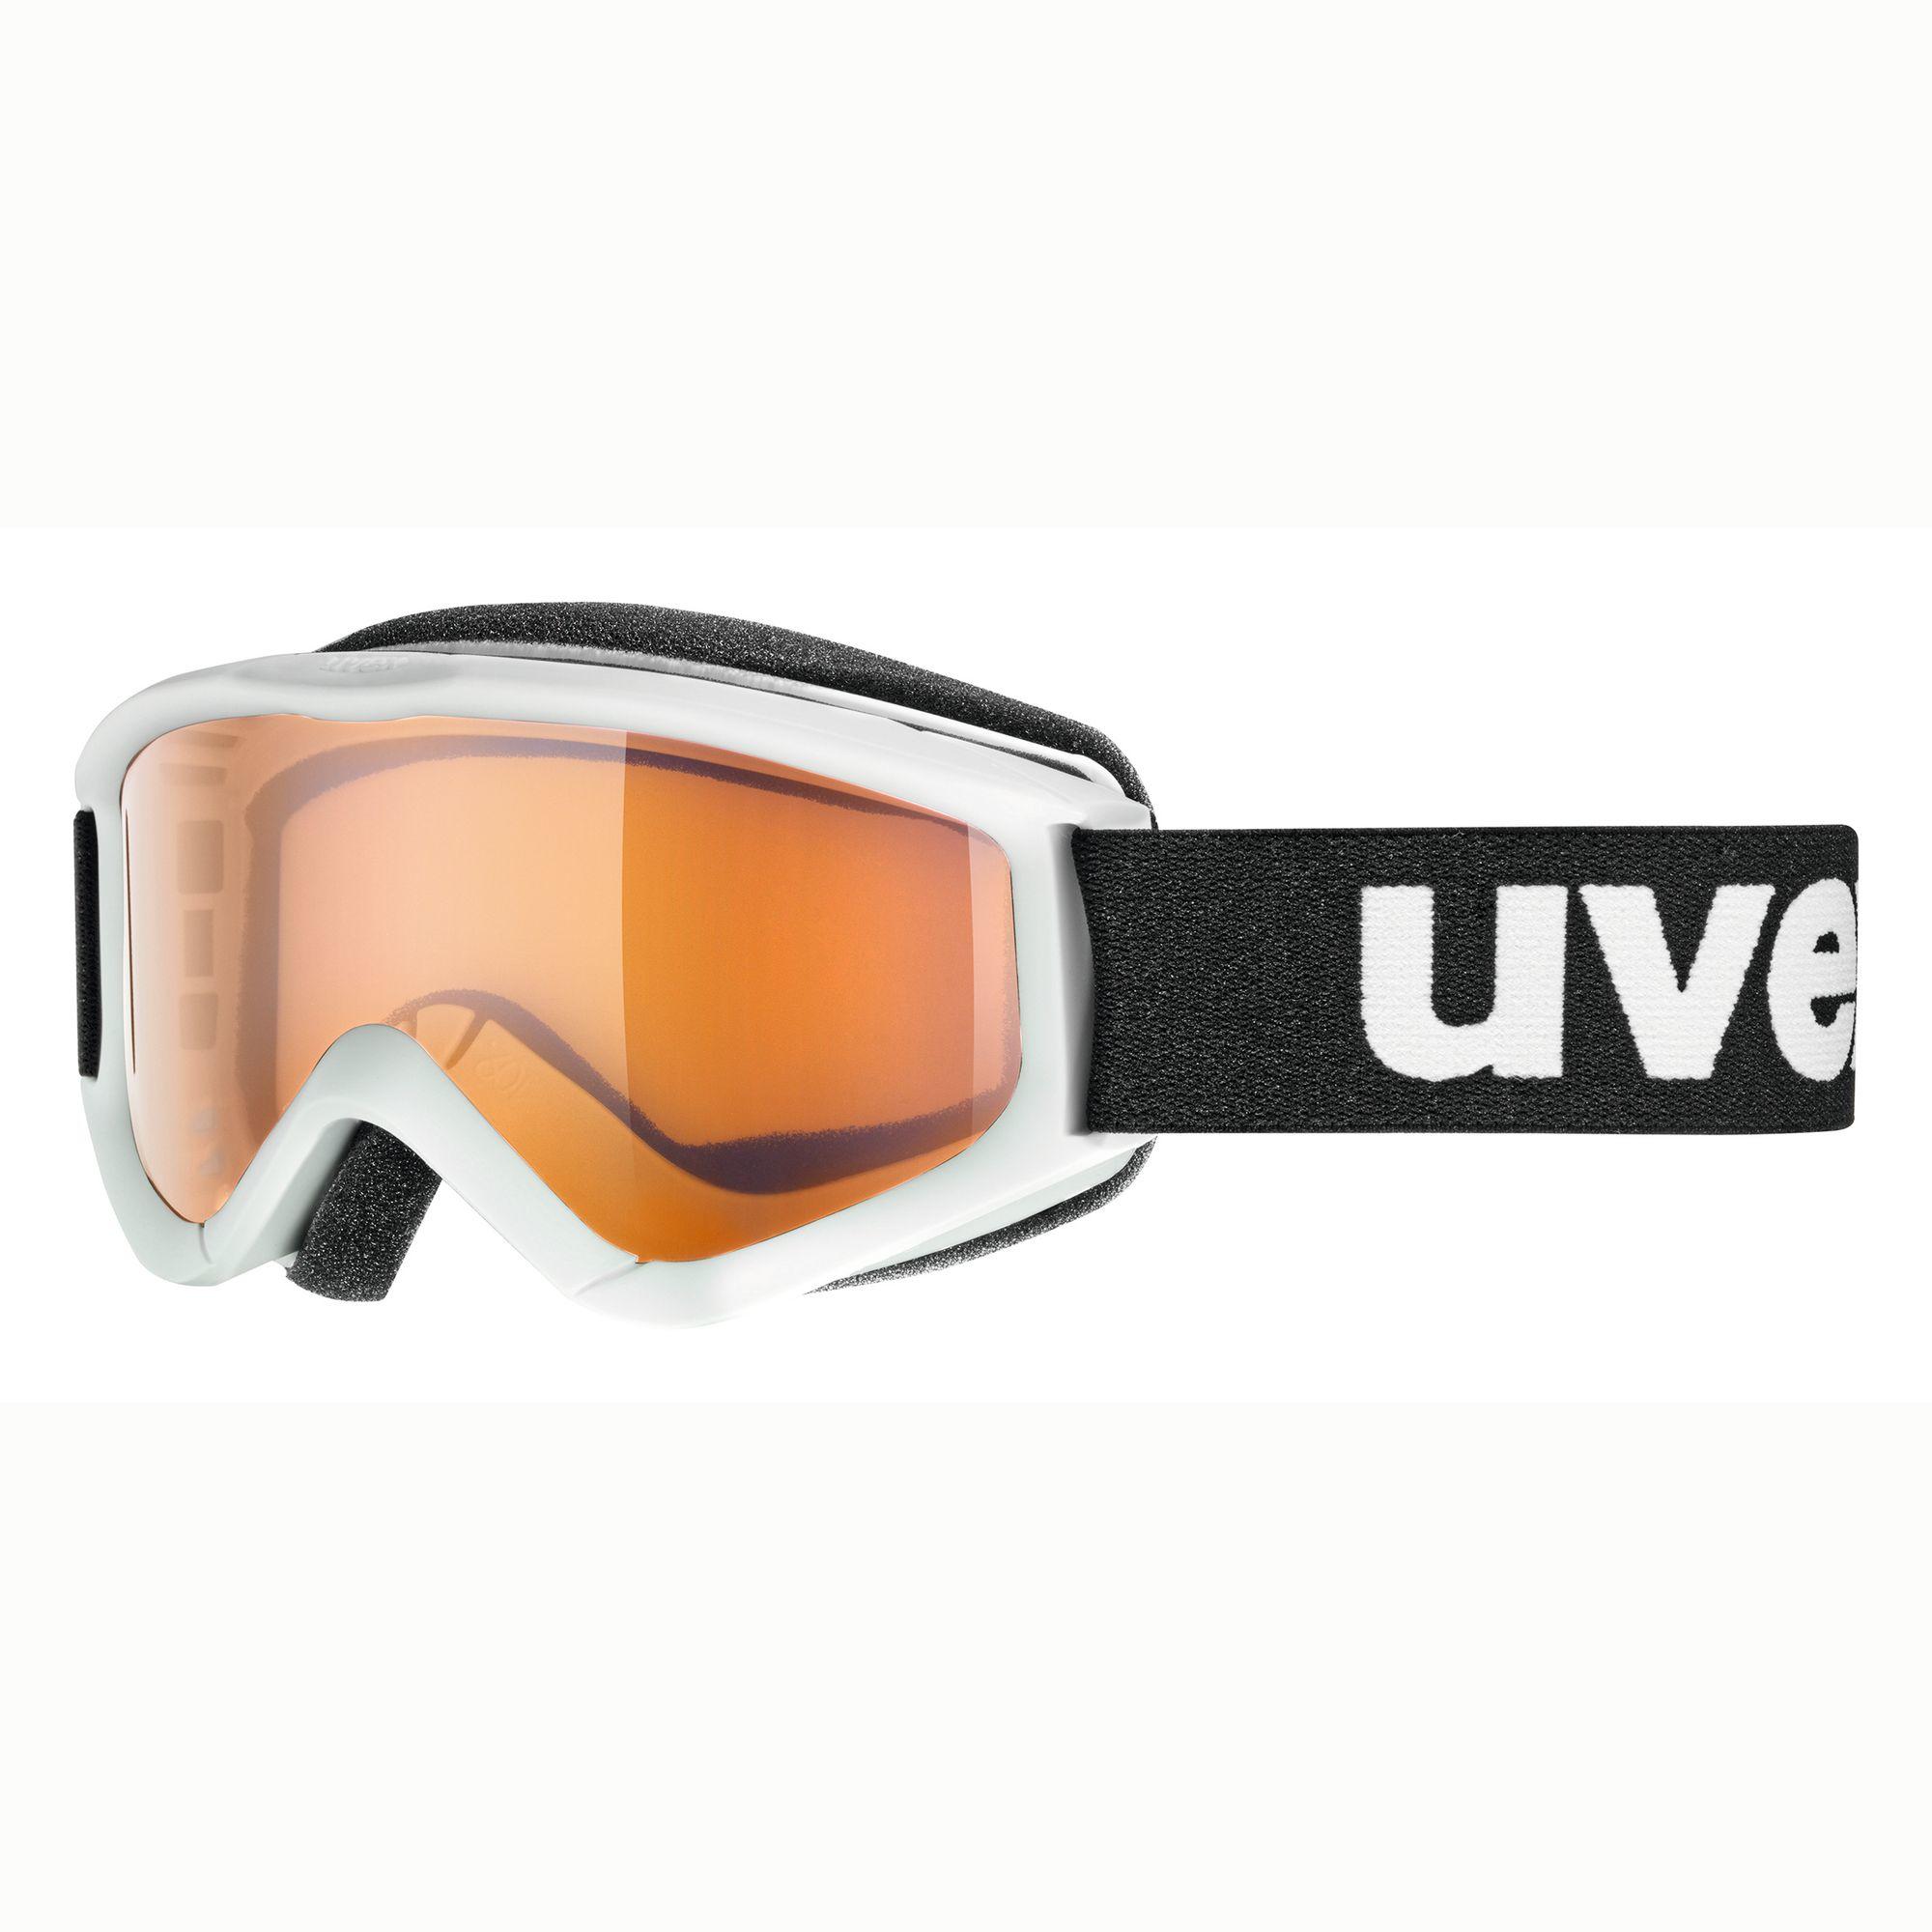 UVEX Size Small Ski And Snowboard Mask Uvex Speedy Pro - White